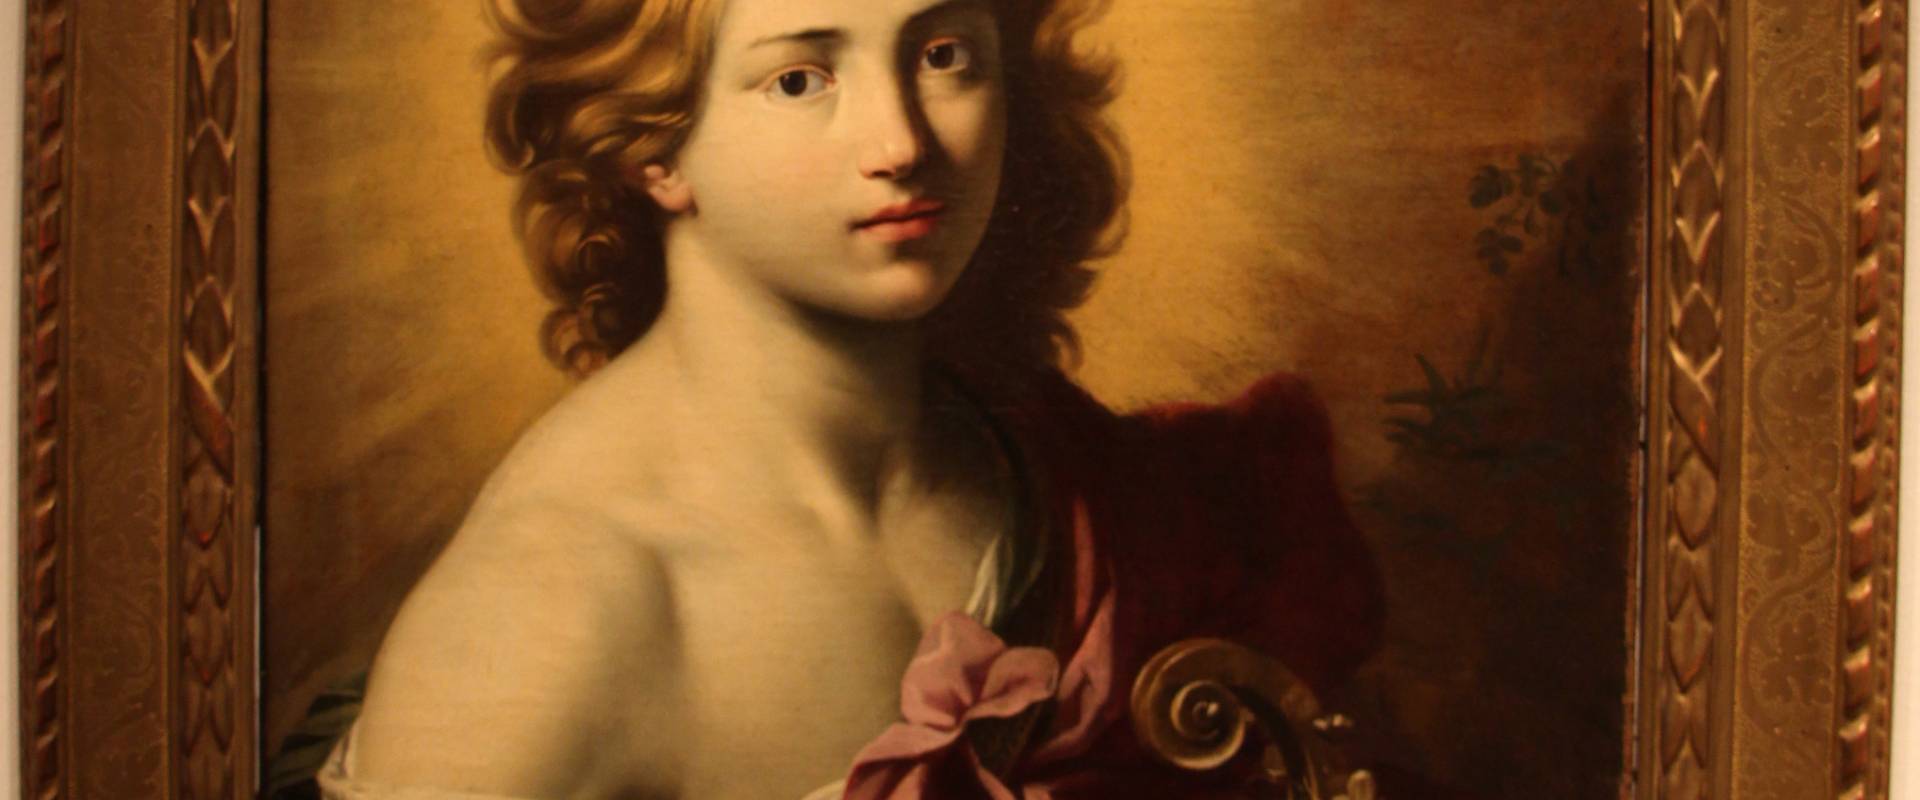 Michele desubleo, apollo, 1630-40 ca., da coll. comunali d'arte, bologna 01 foto di Sailko